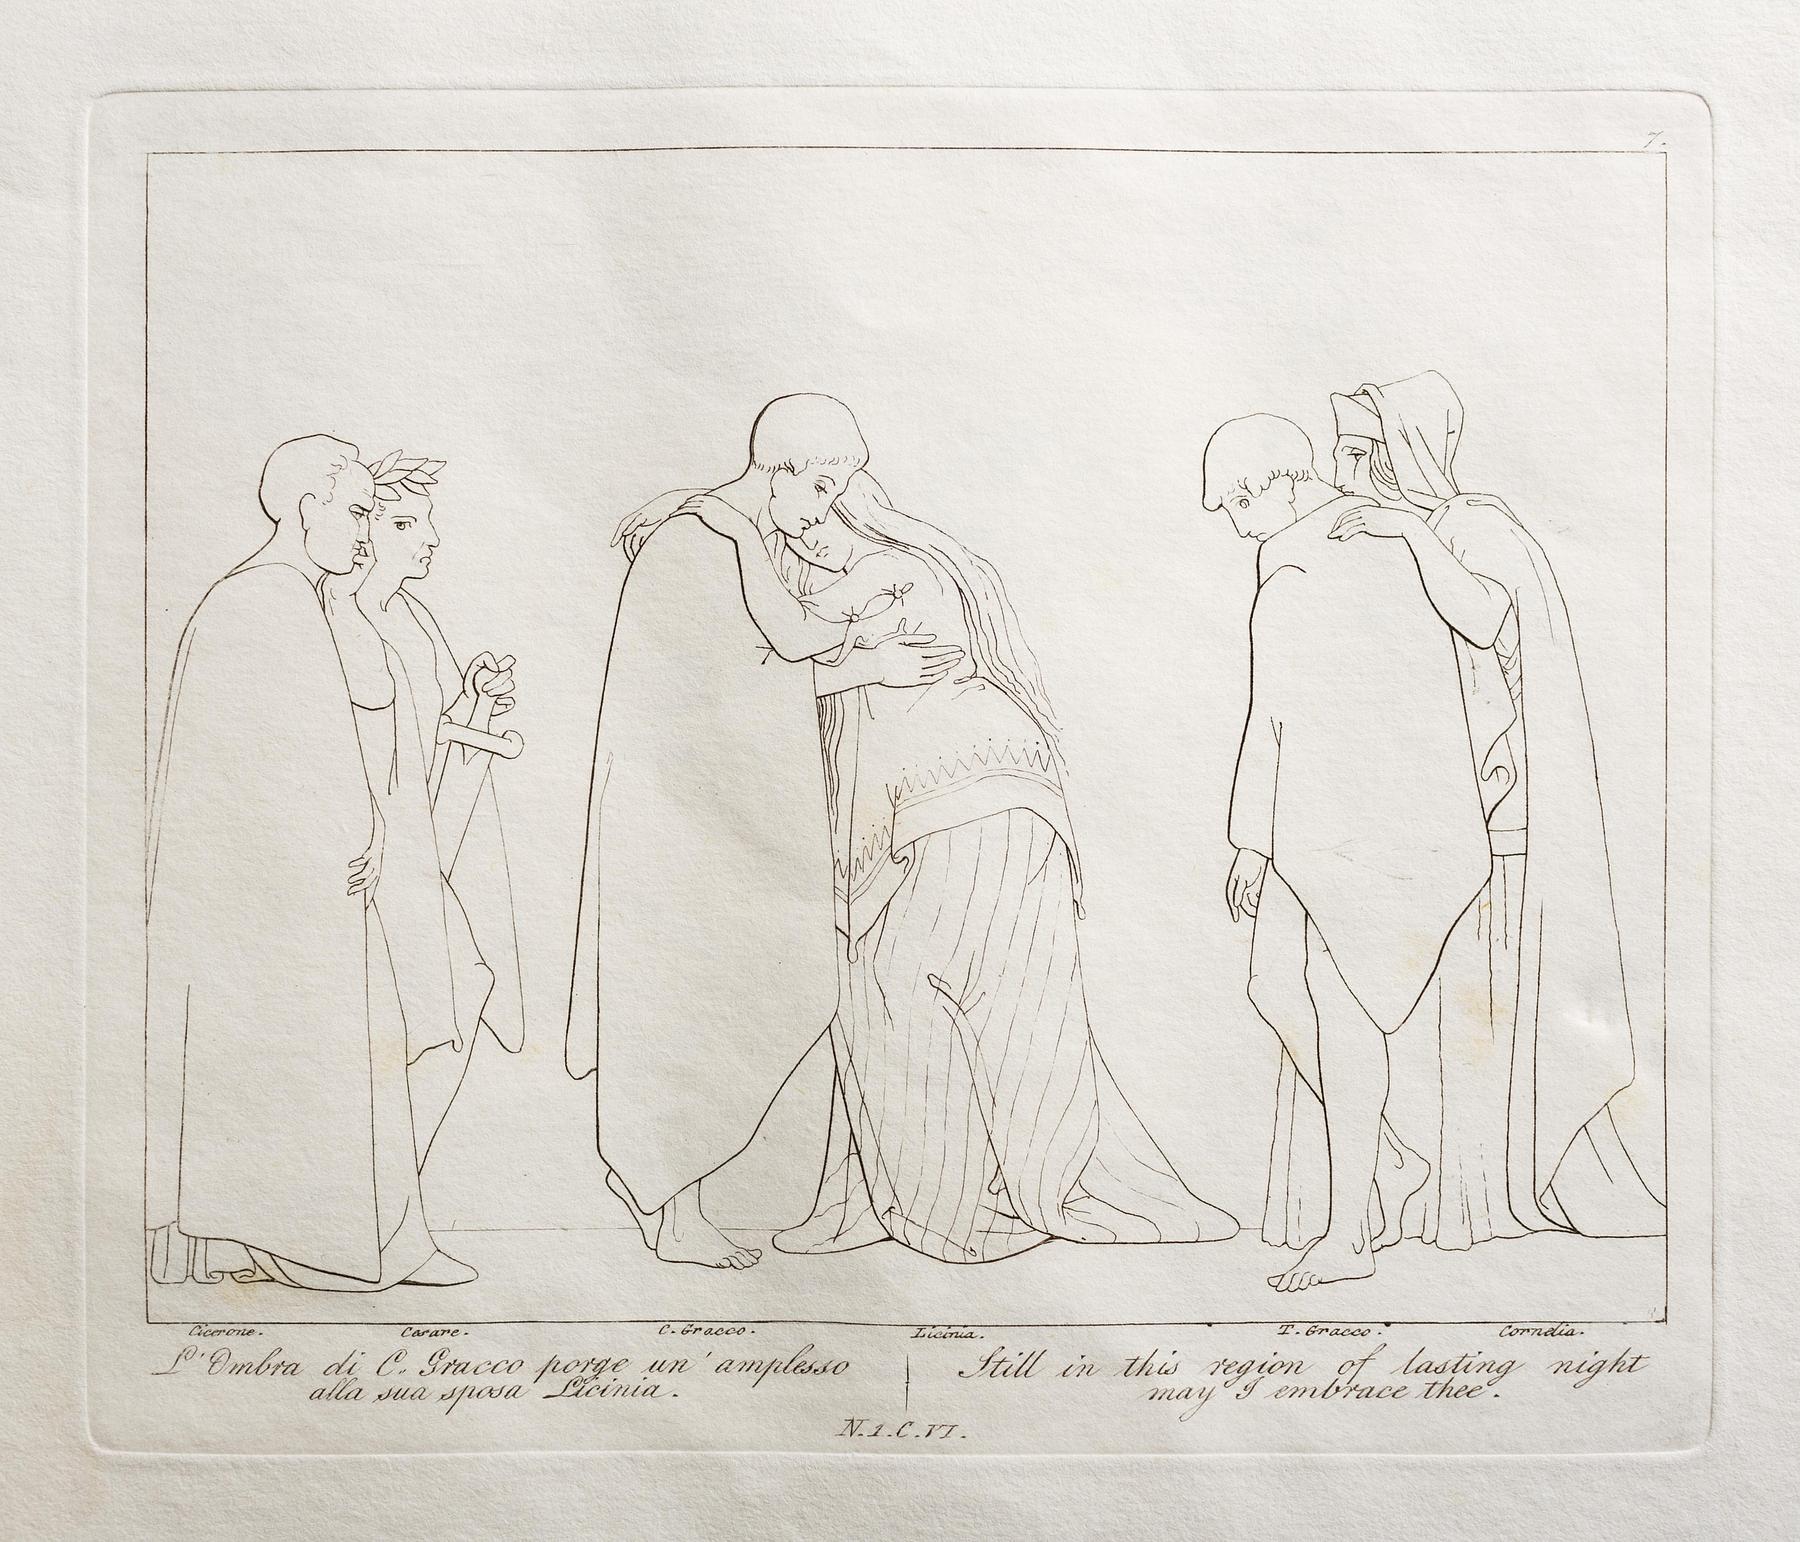 L'Ombra di C. Gracco porge un'amplesso alla sua sposa Licinia, E555,7